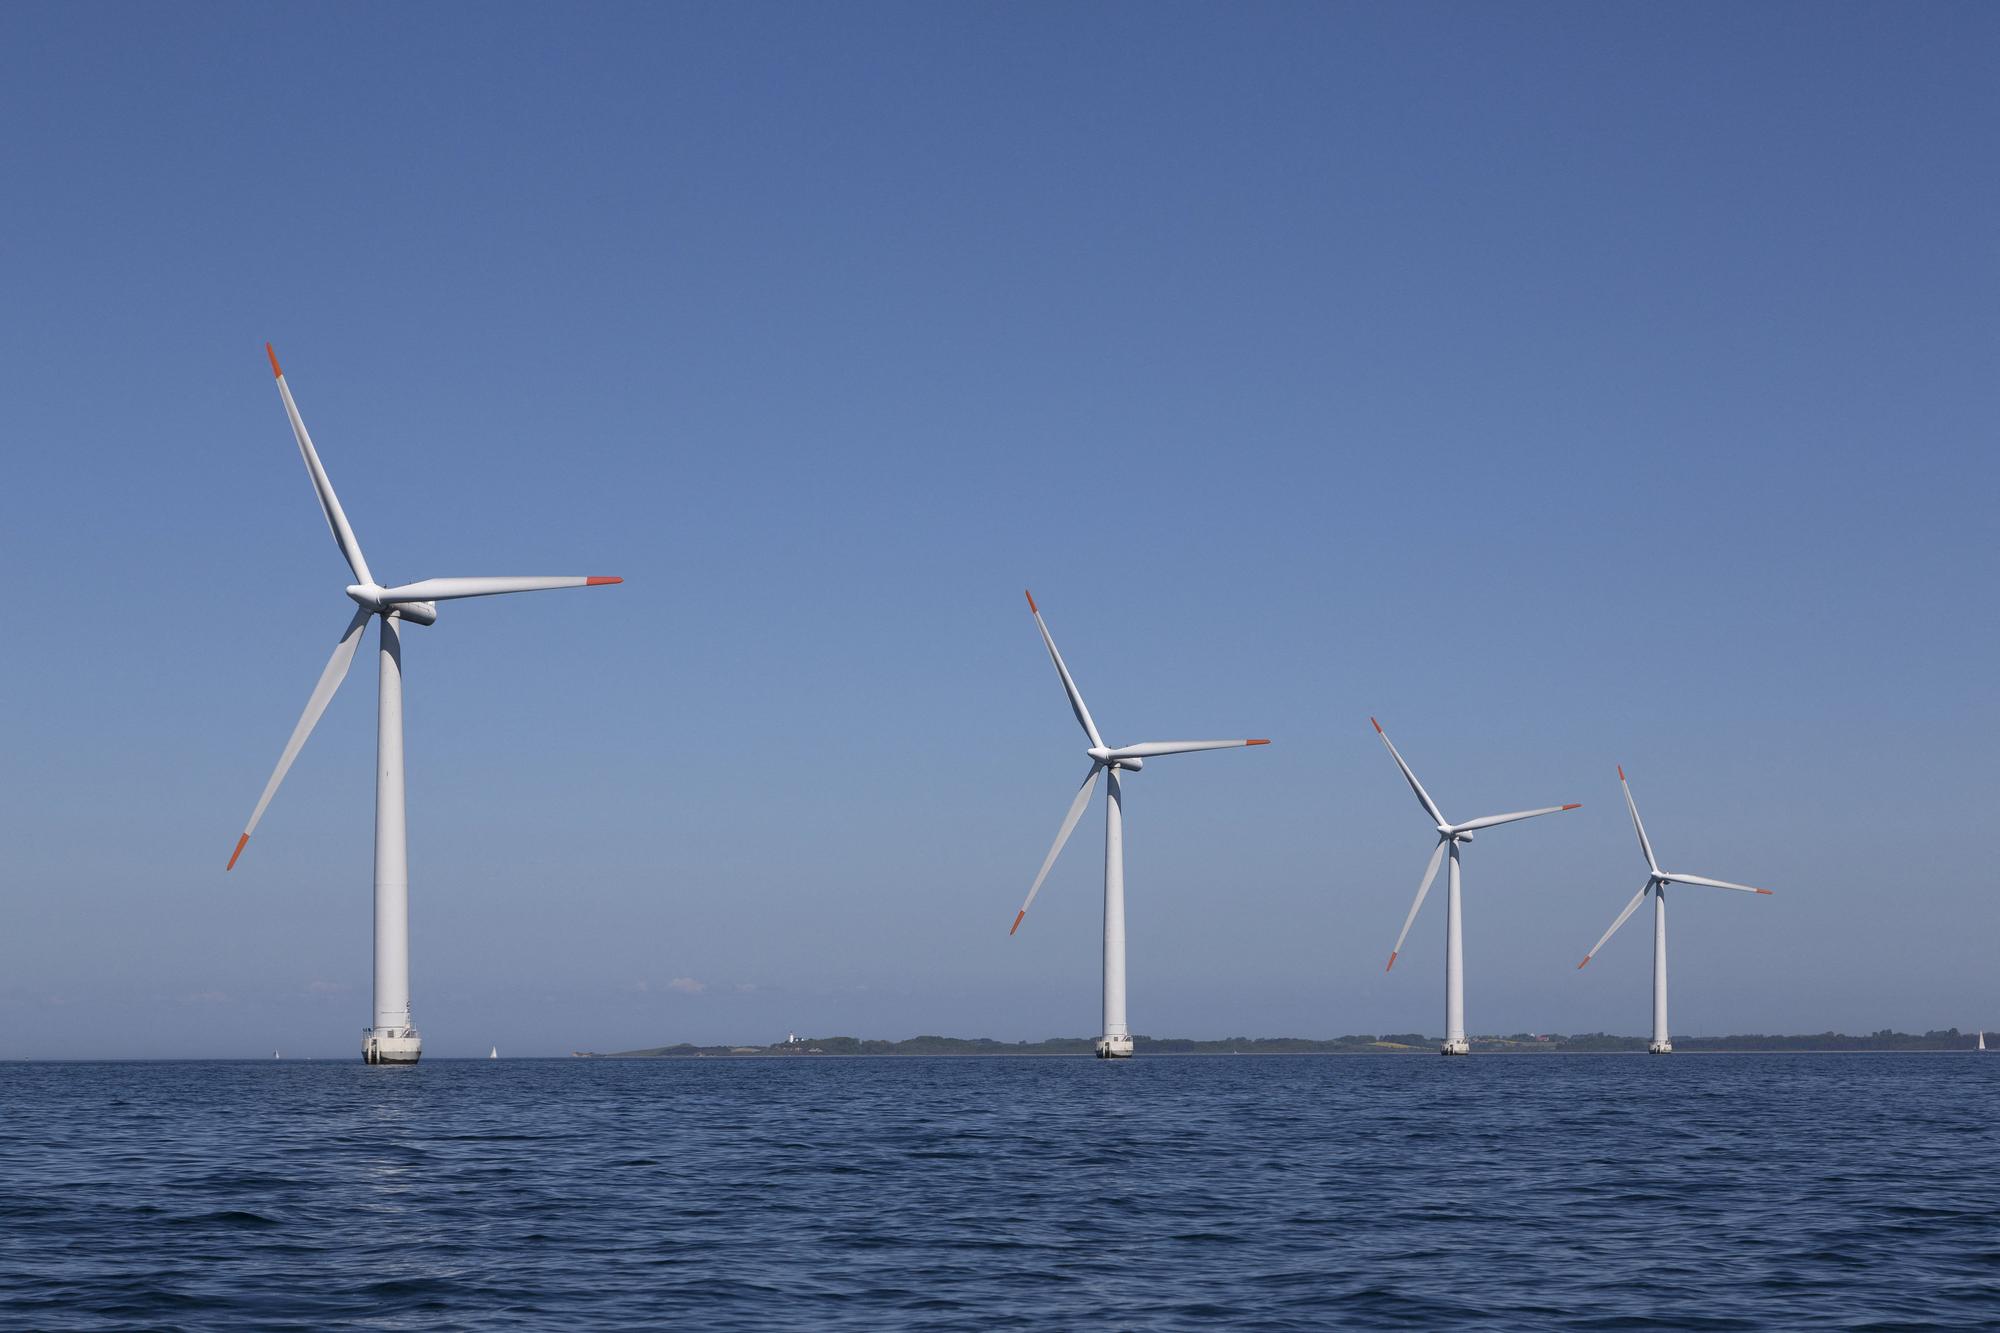 Des éoliennes au large de l'île de Samsø au Danemark. [RITZAU SCANPIX VIA AFP - STIG NOERHALD]